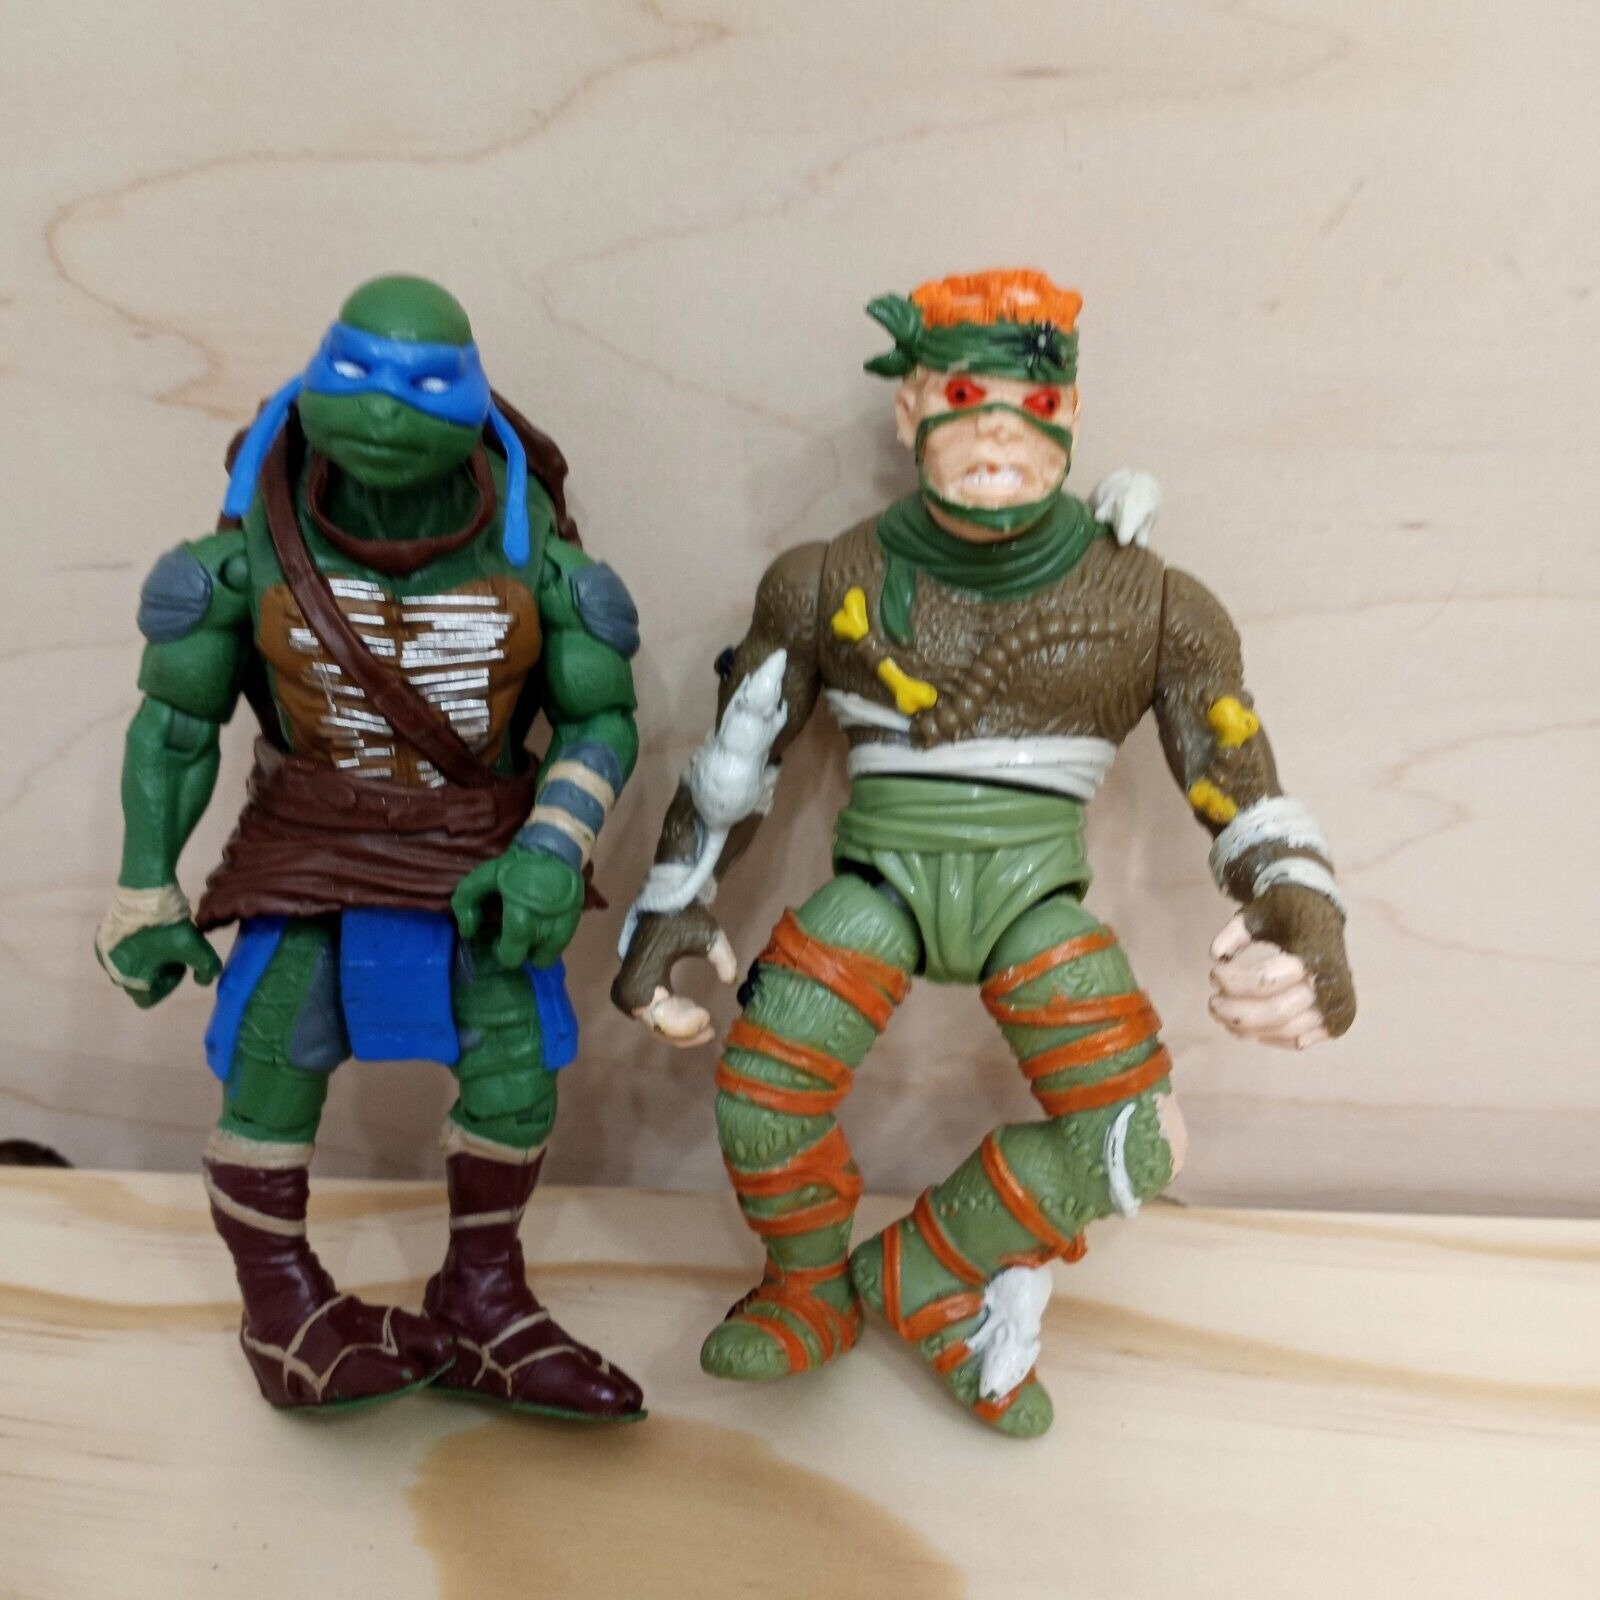 Teenage Mutant Ninja Turtles vintage figurine jouet tmnt moc